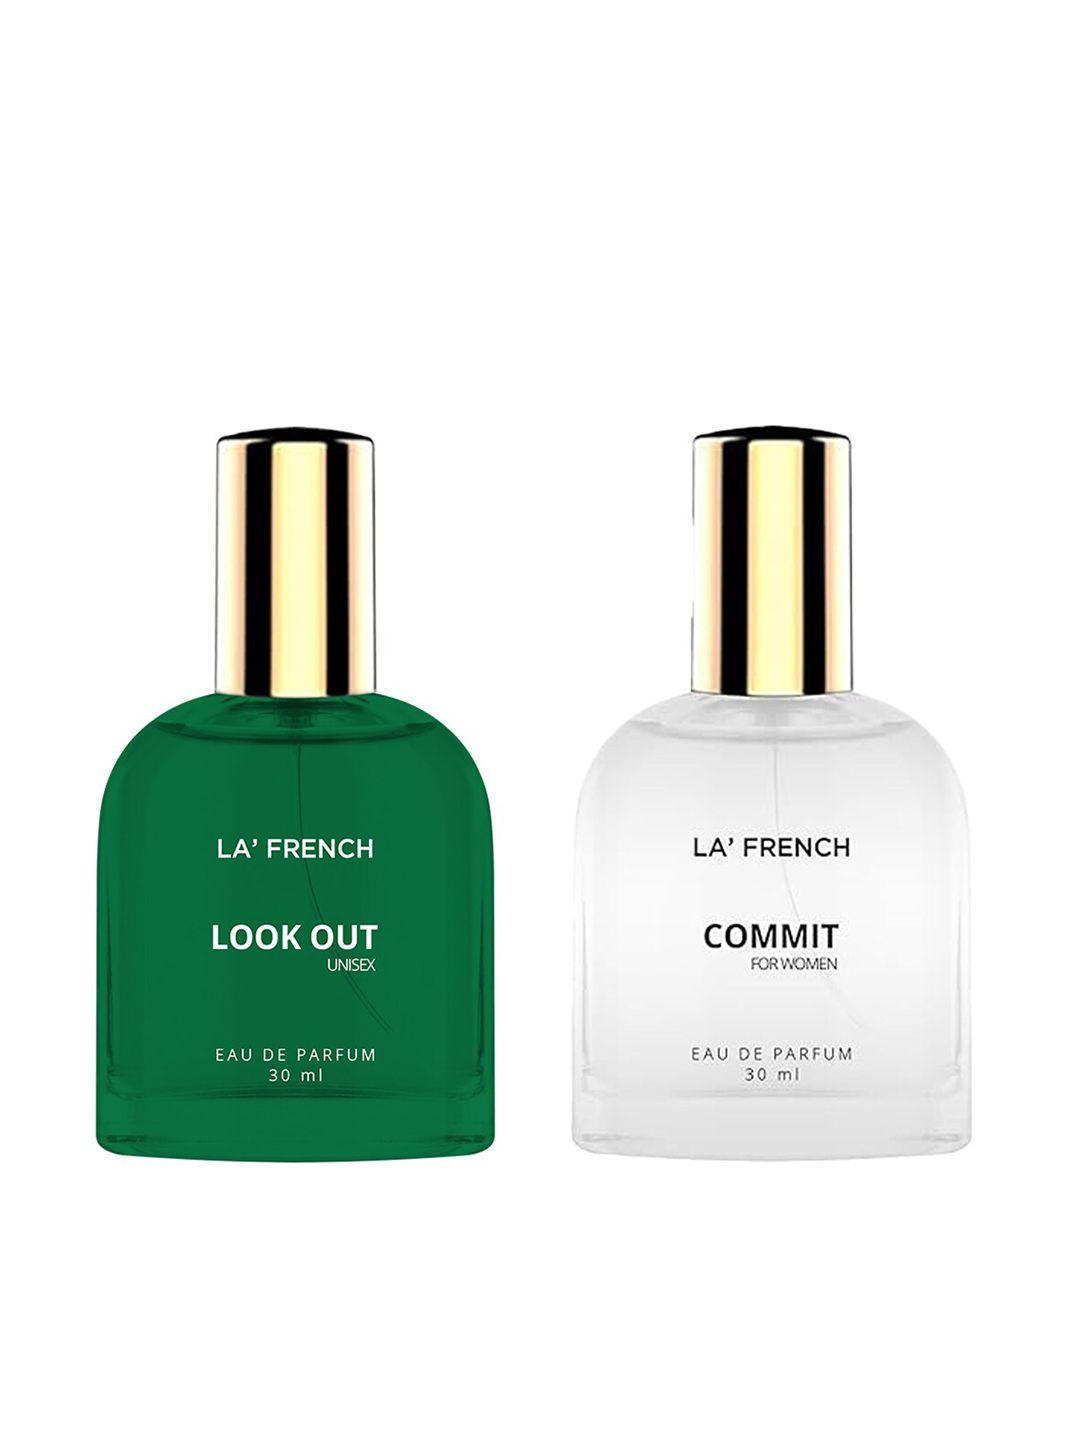 la french 2-pcs look out & commit long lasting eau de parfum - 30ml each